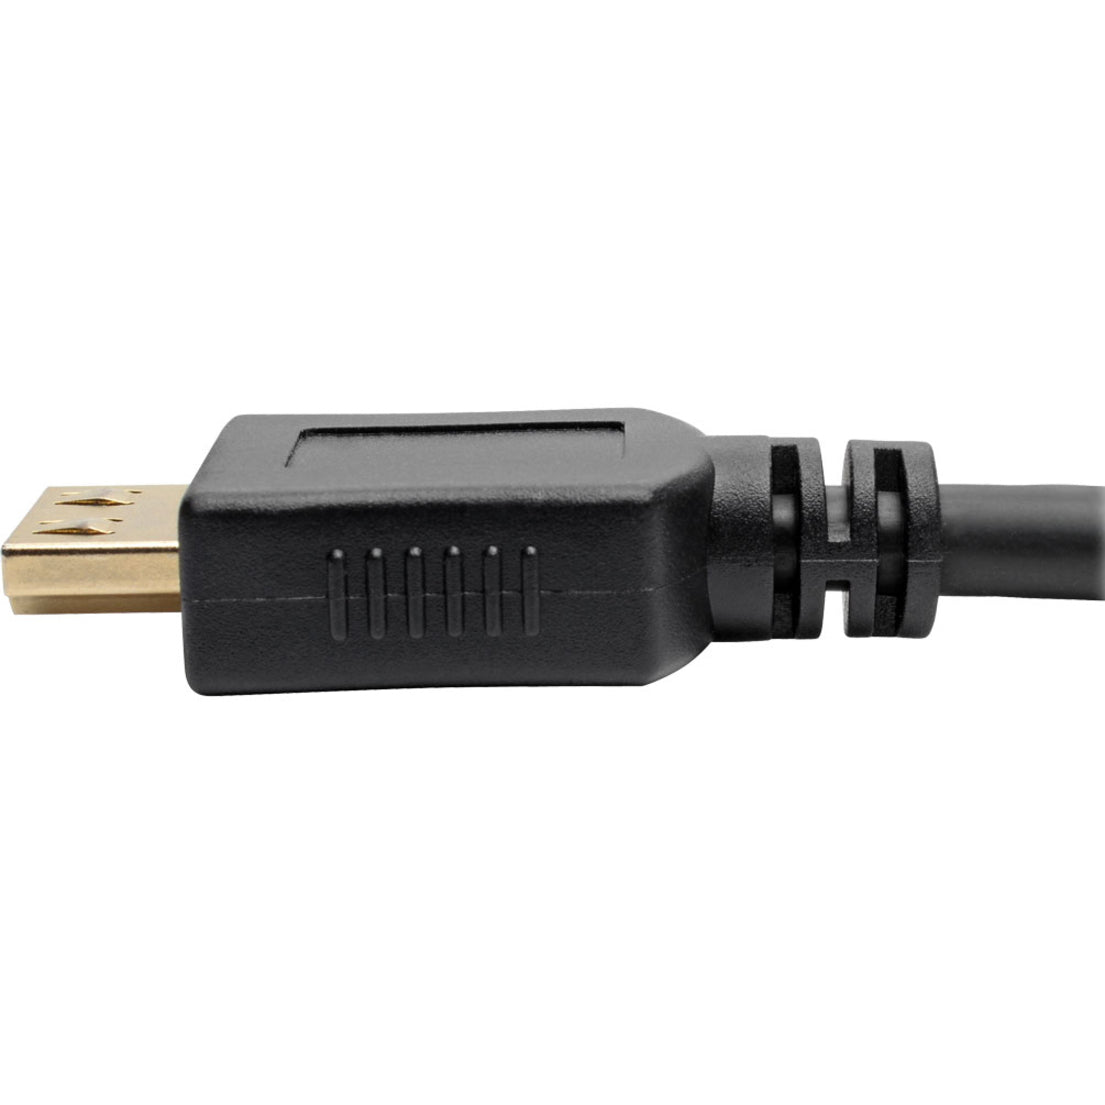 锐视Lite P568-016-BK-GRP 高速HDMI数据线 16 英尺 带抓握式连接器 - 4K 黑色 锐视Lite